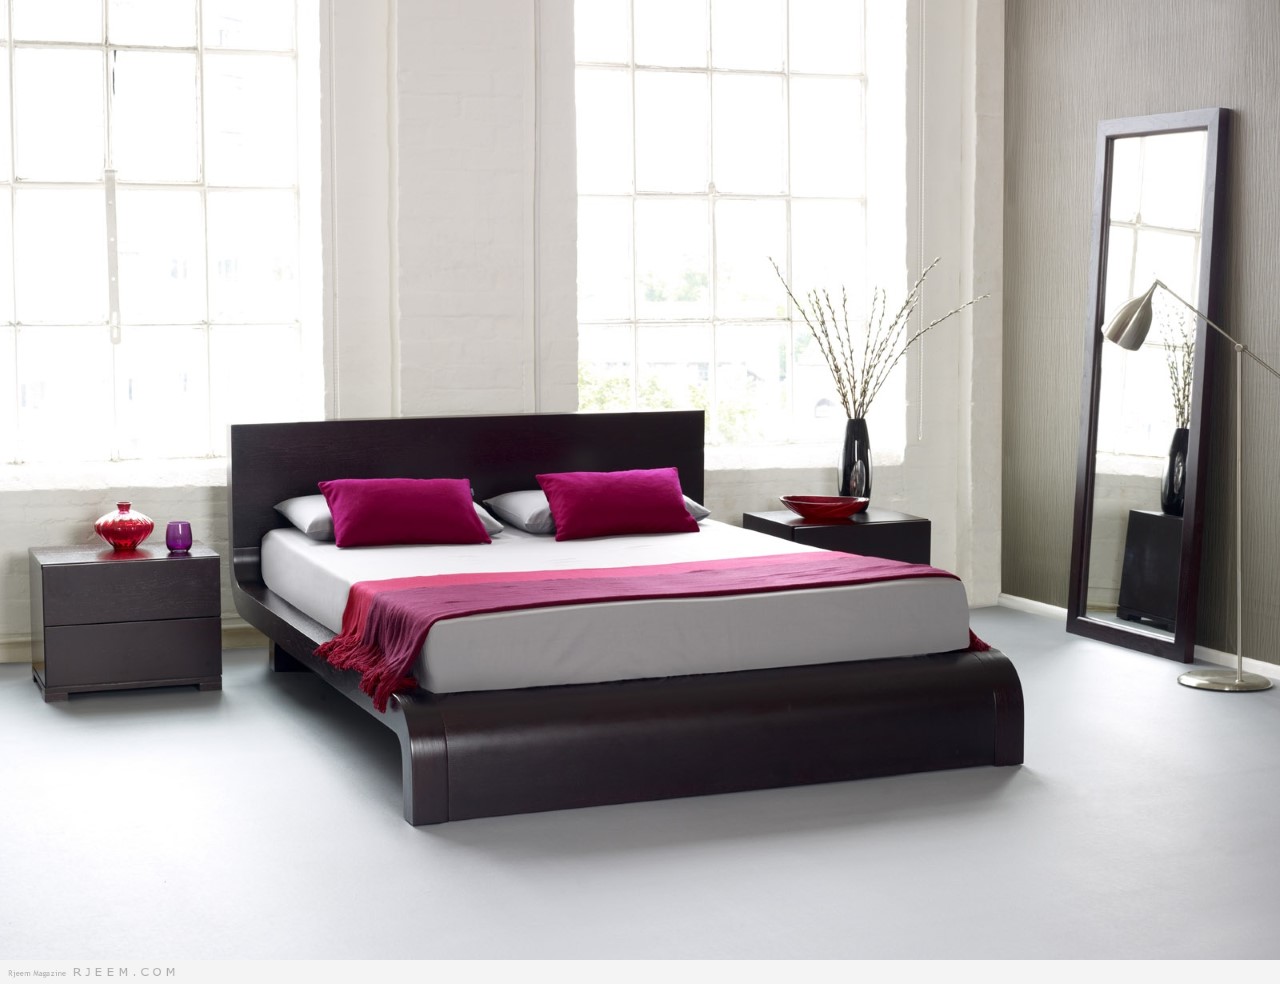 ديكور غرفة النوم بسيطة الديكورات البسيطة التي تظهر جمال المكان قبلات الحياة